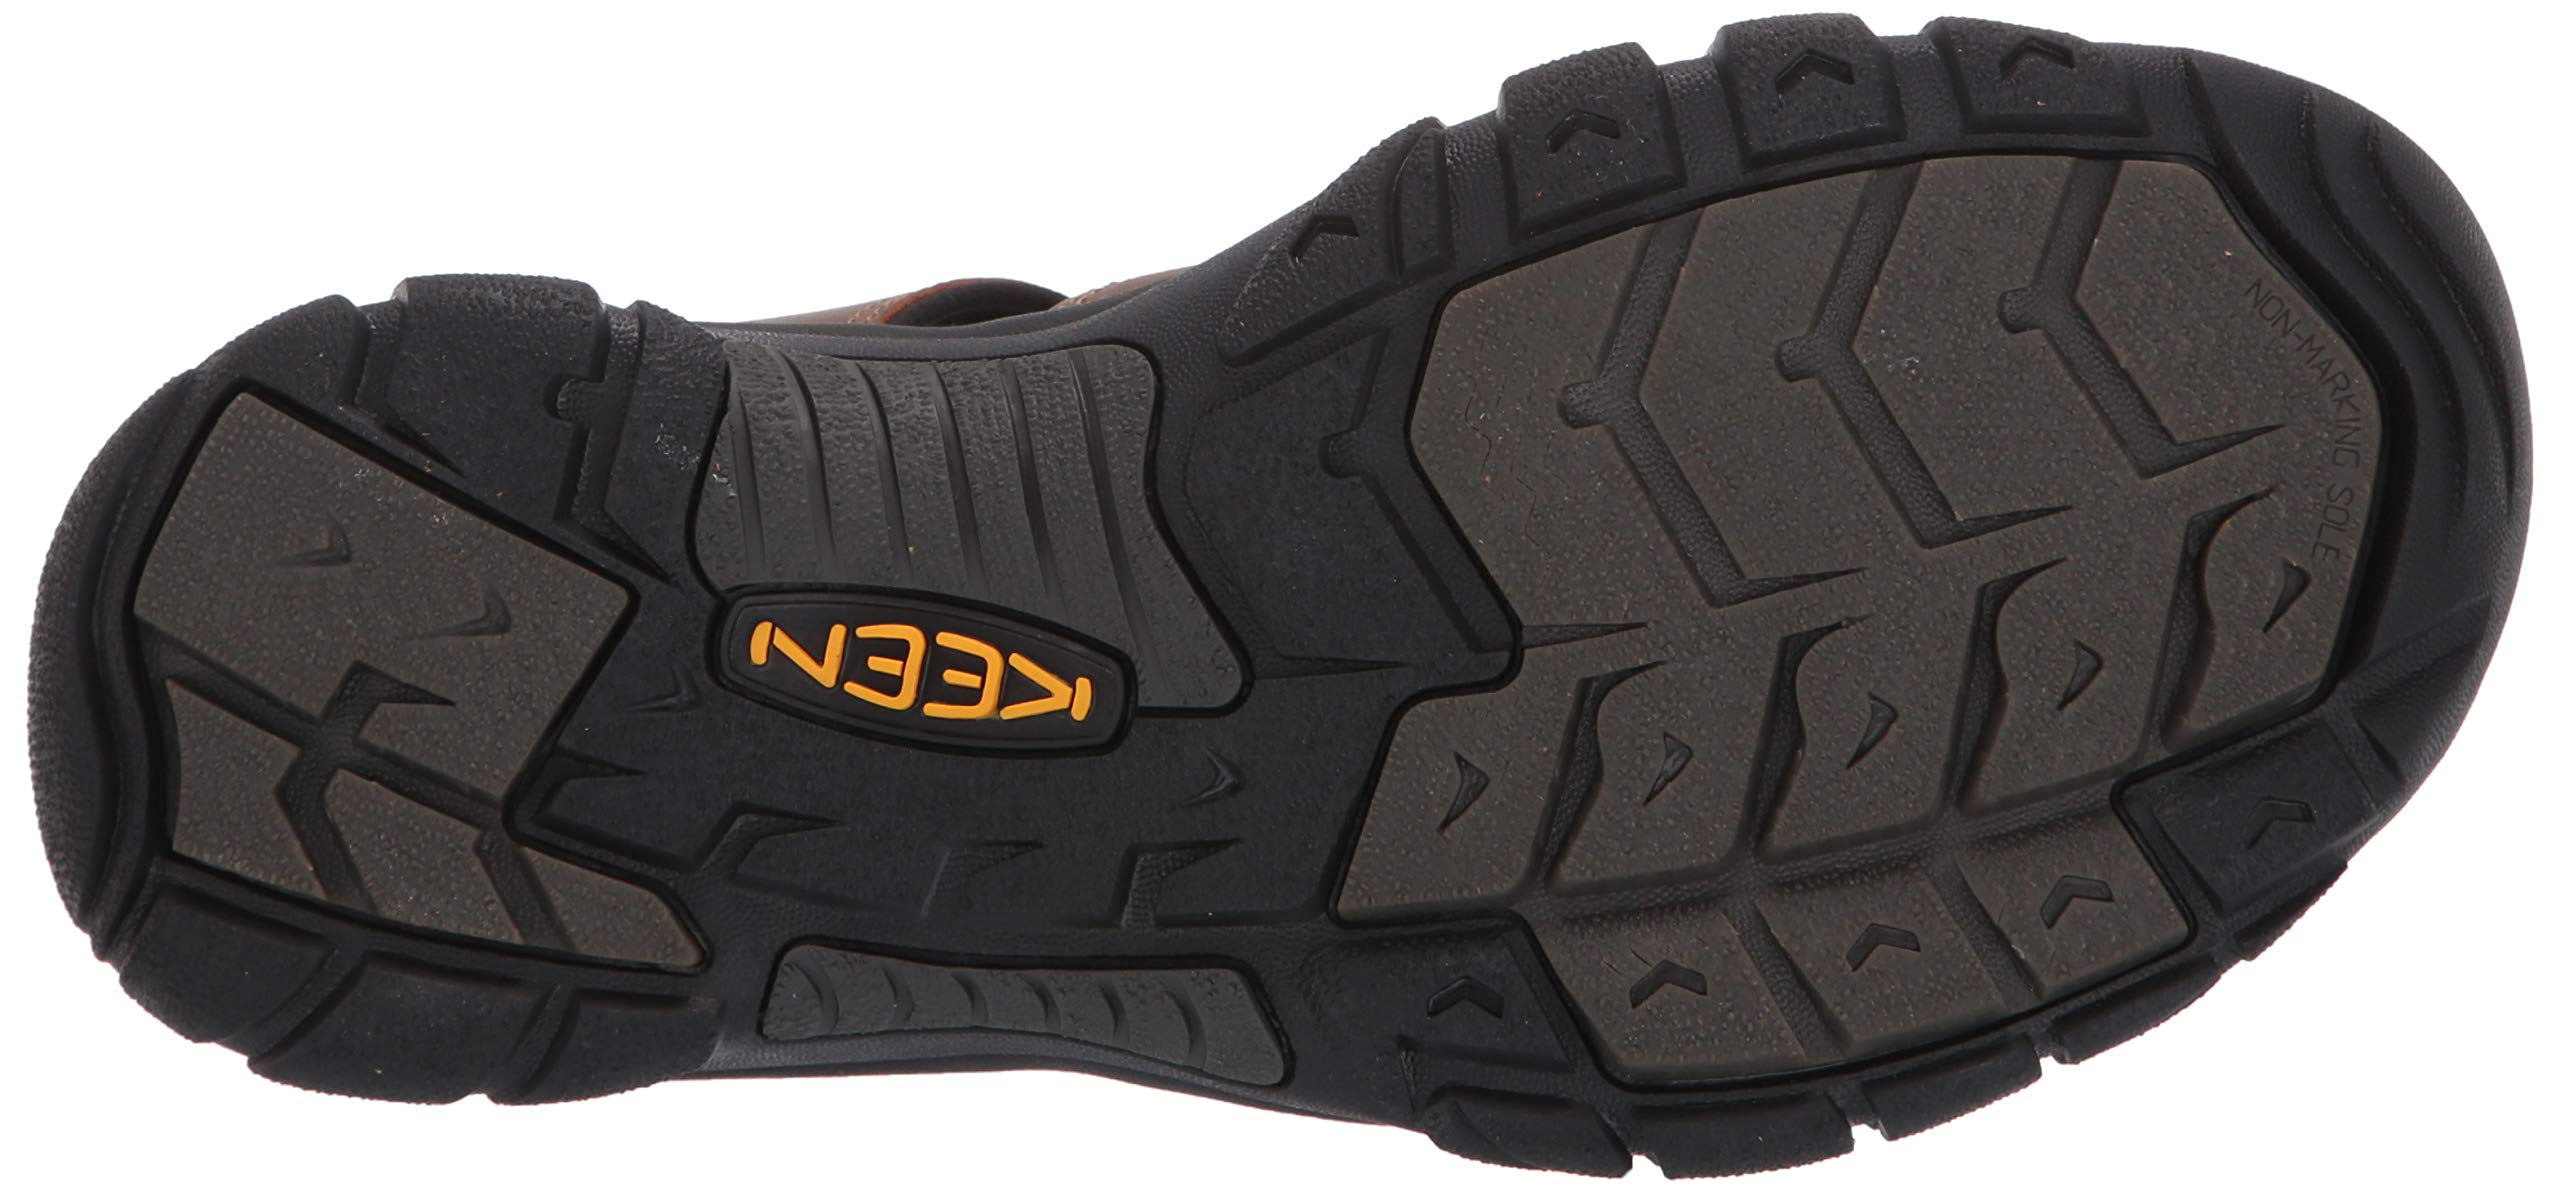 KEEN Men's Newport Sandals